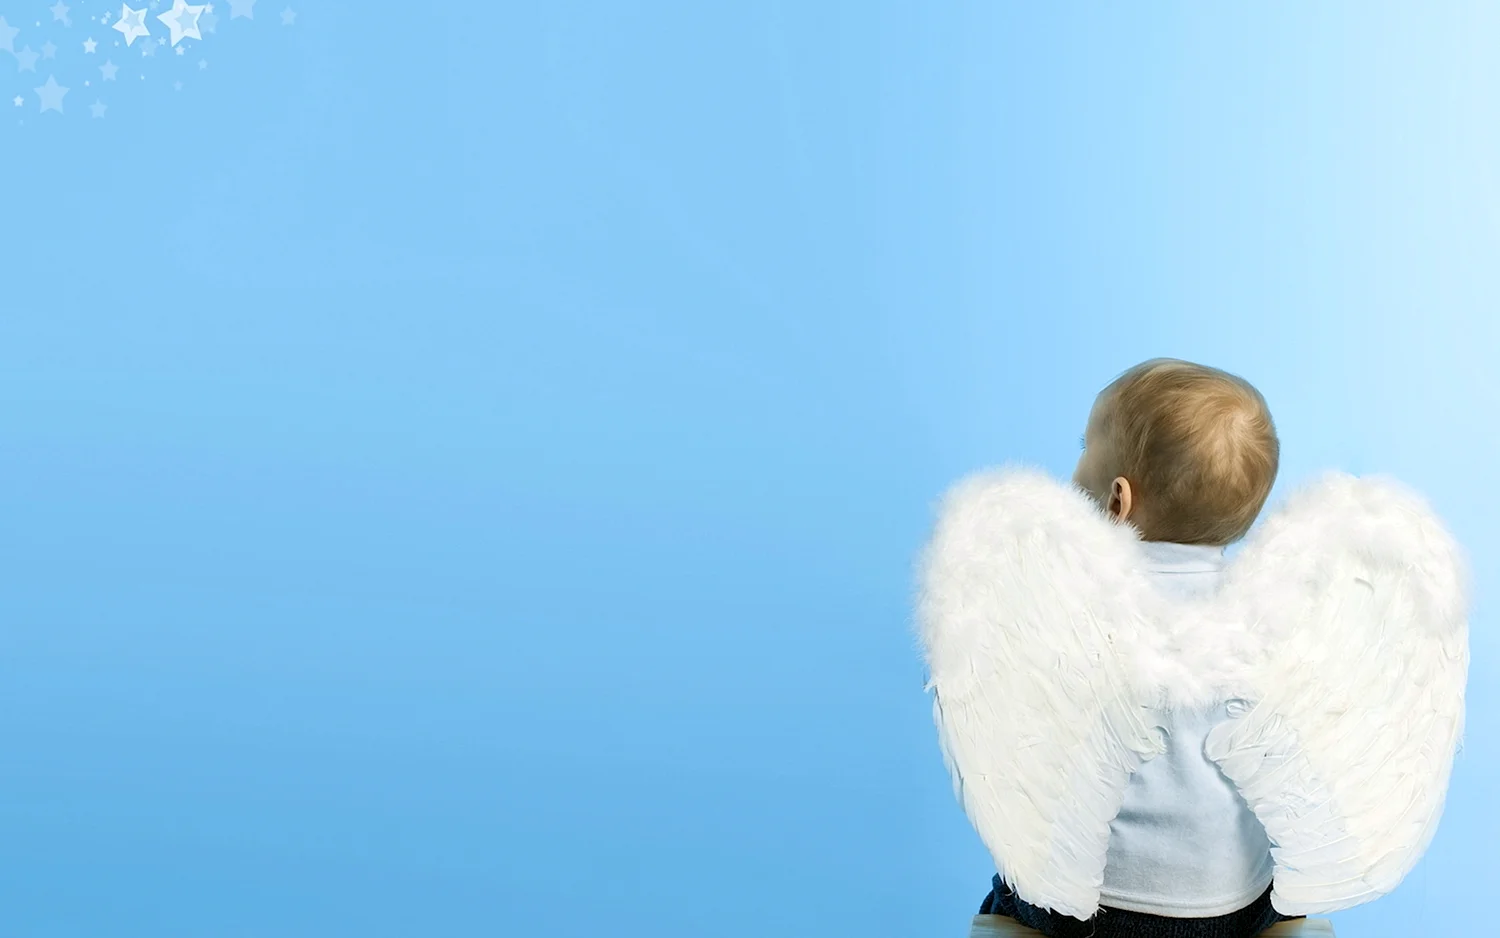 Ребенок с крыльями